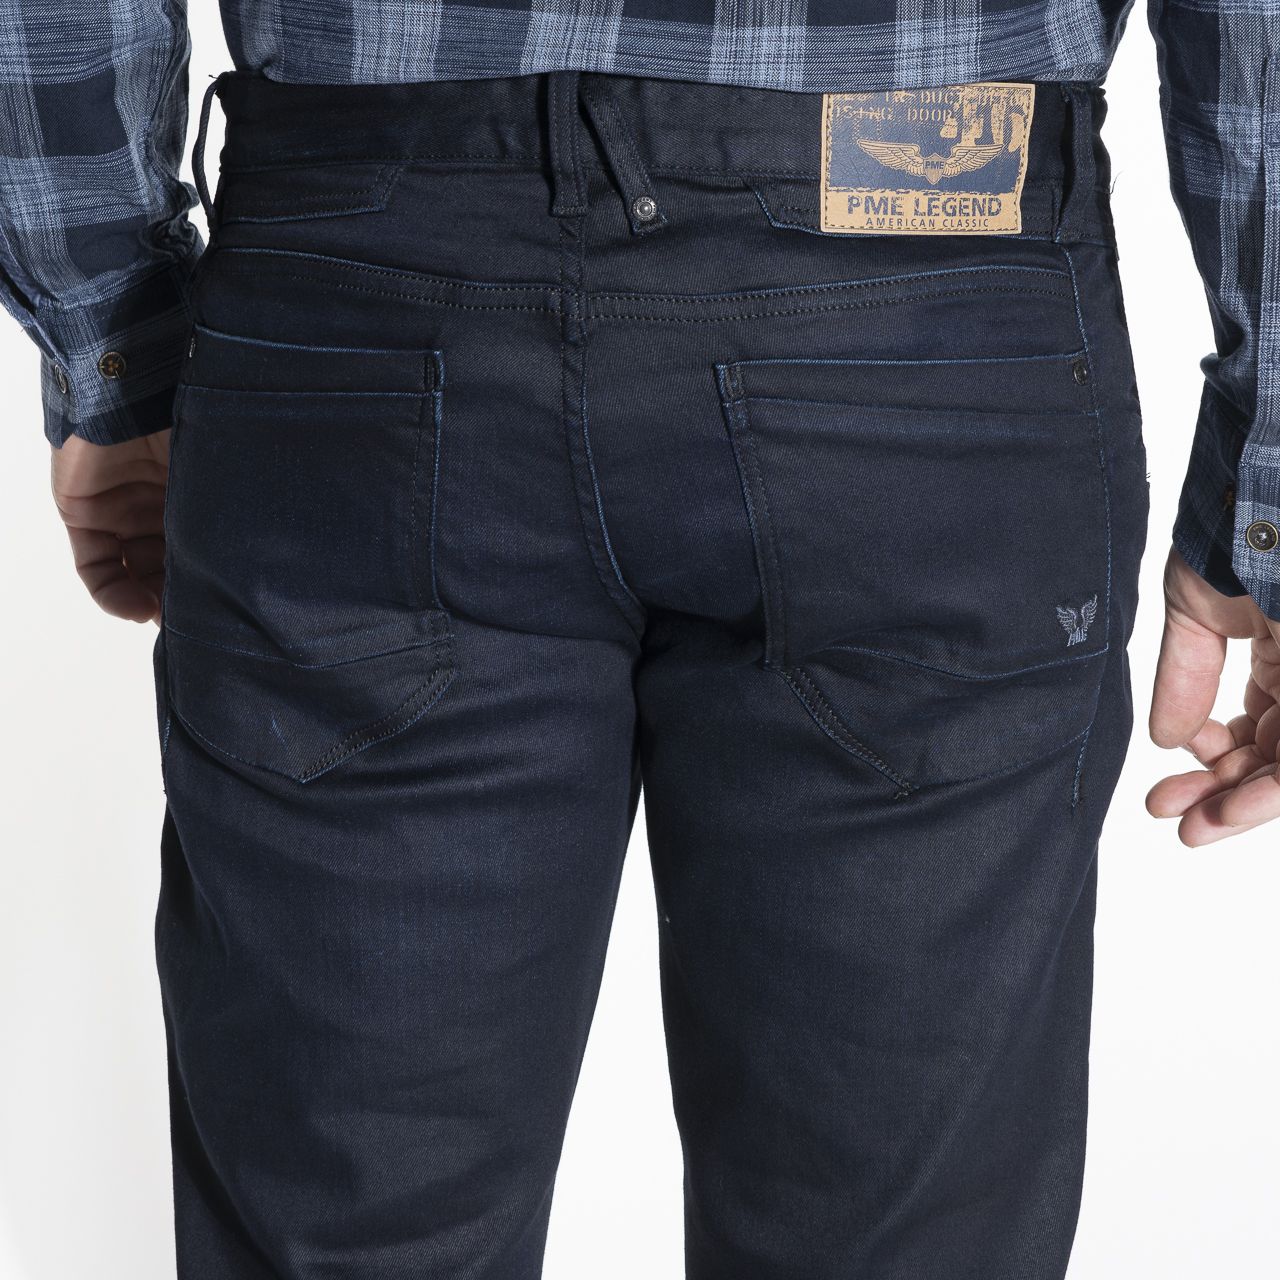 Hangen levering aan huis Plaatsen PME Legend Curtis Jeans | Shop nu - OFM.